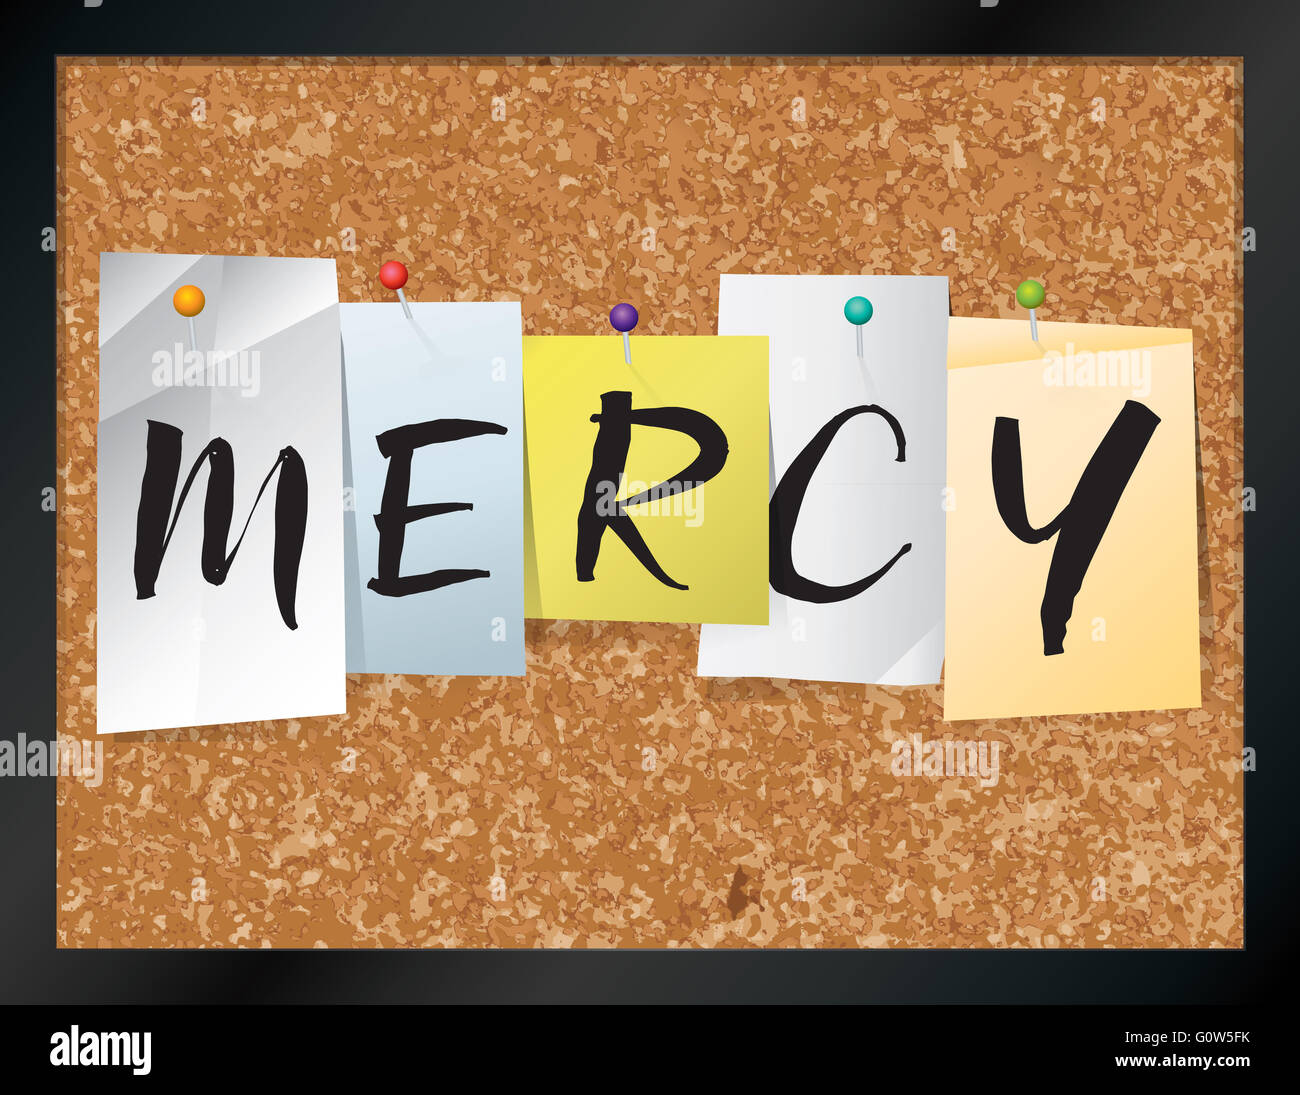 Una illustrazione della parola "ERCY' scritta su pezzi di carta colorata imperniato ad un tappo di sughero bulletin board. Foto Stock